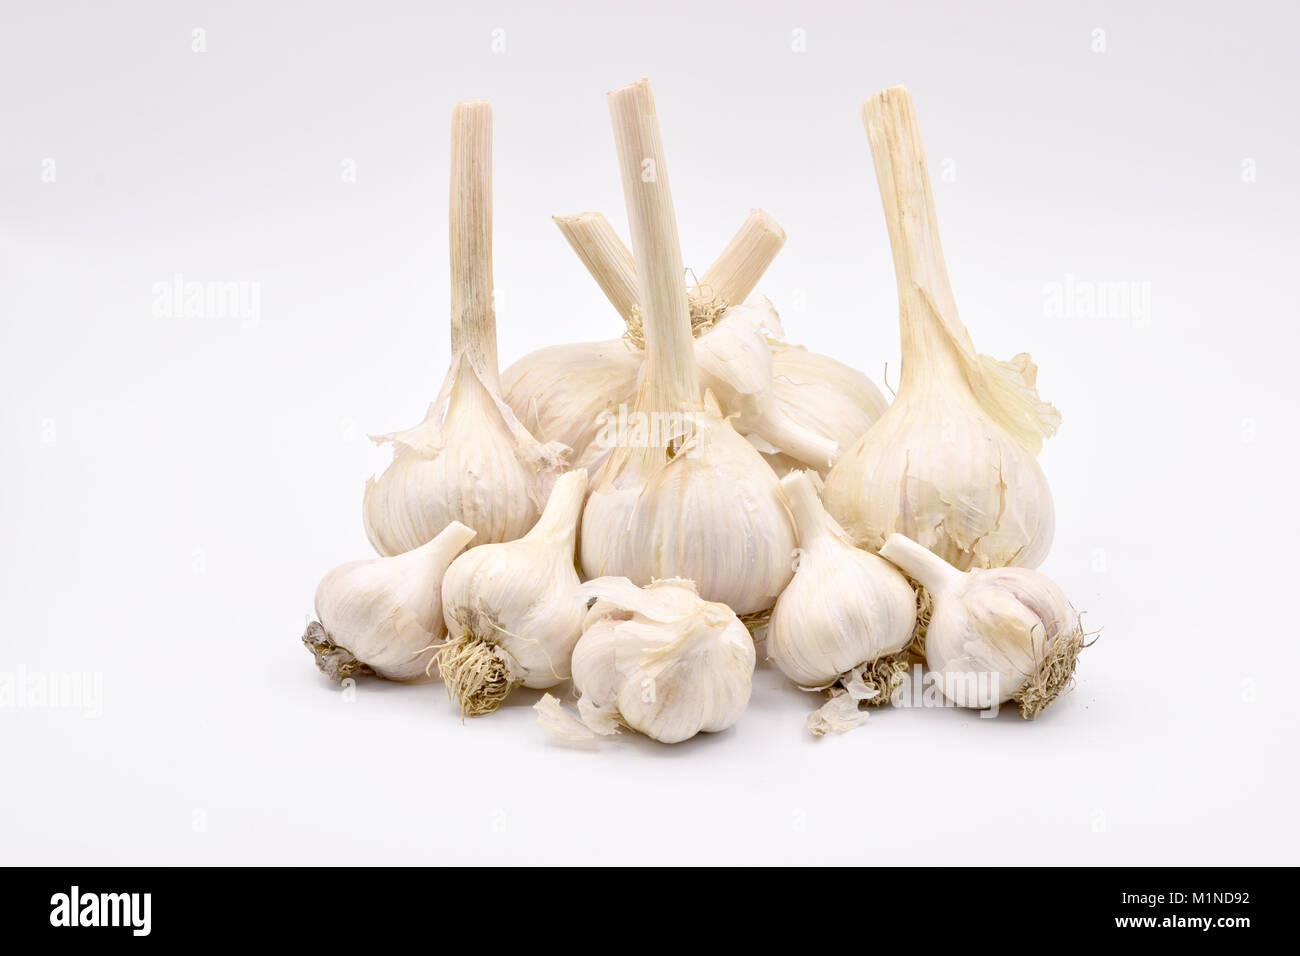 Deliziosi bulbi di aglio con lunghi steli disposti su una transizione senza sfondo bianco Foto Stock